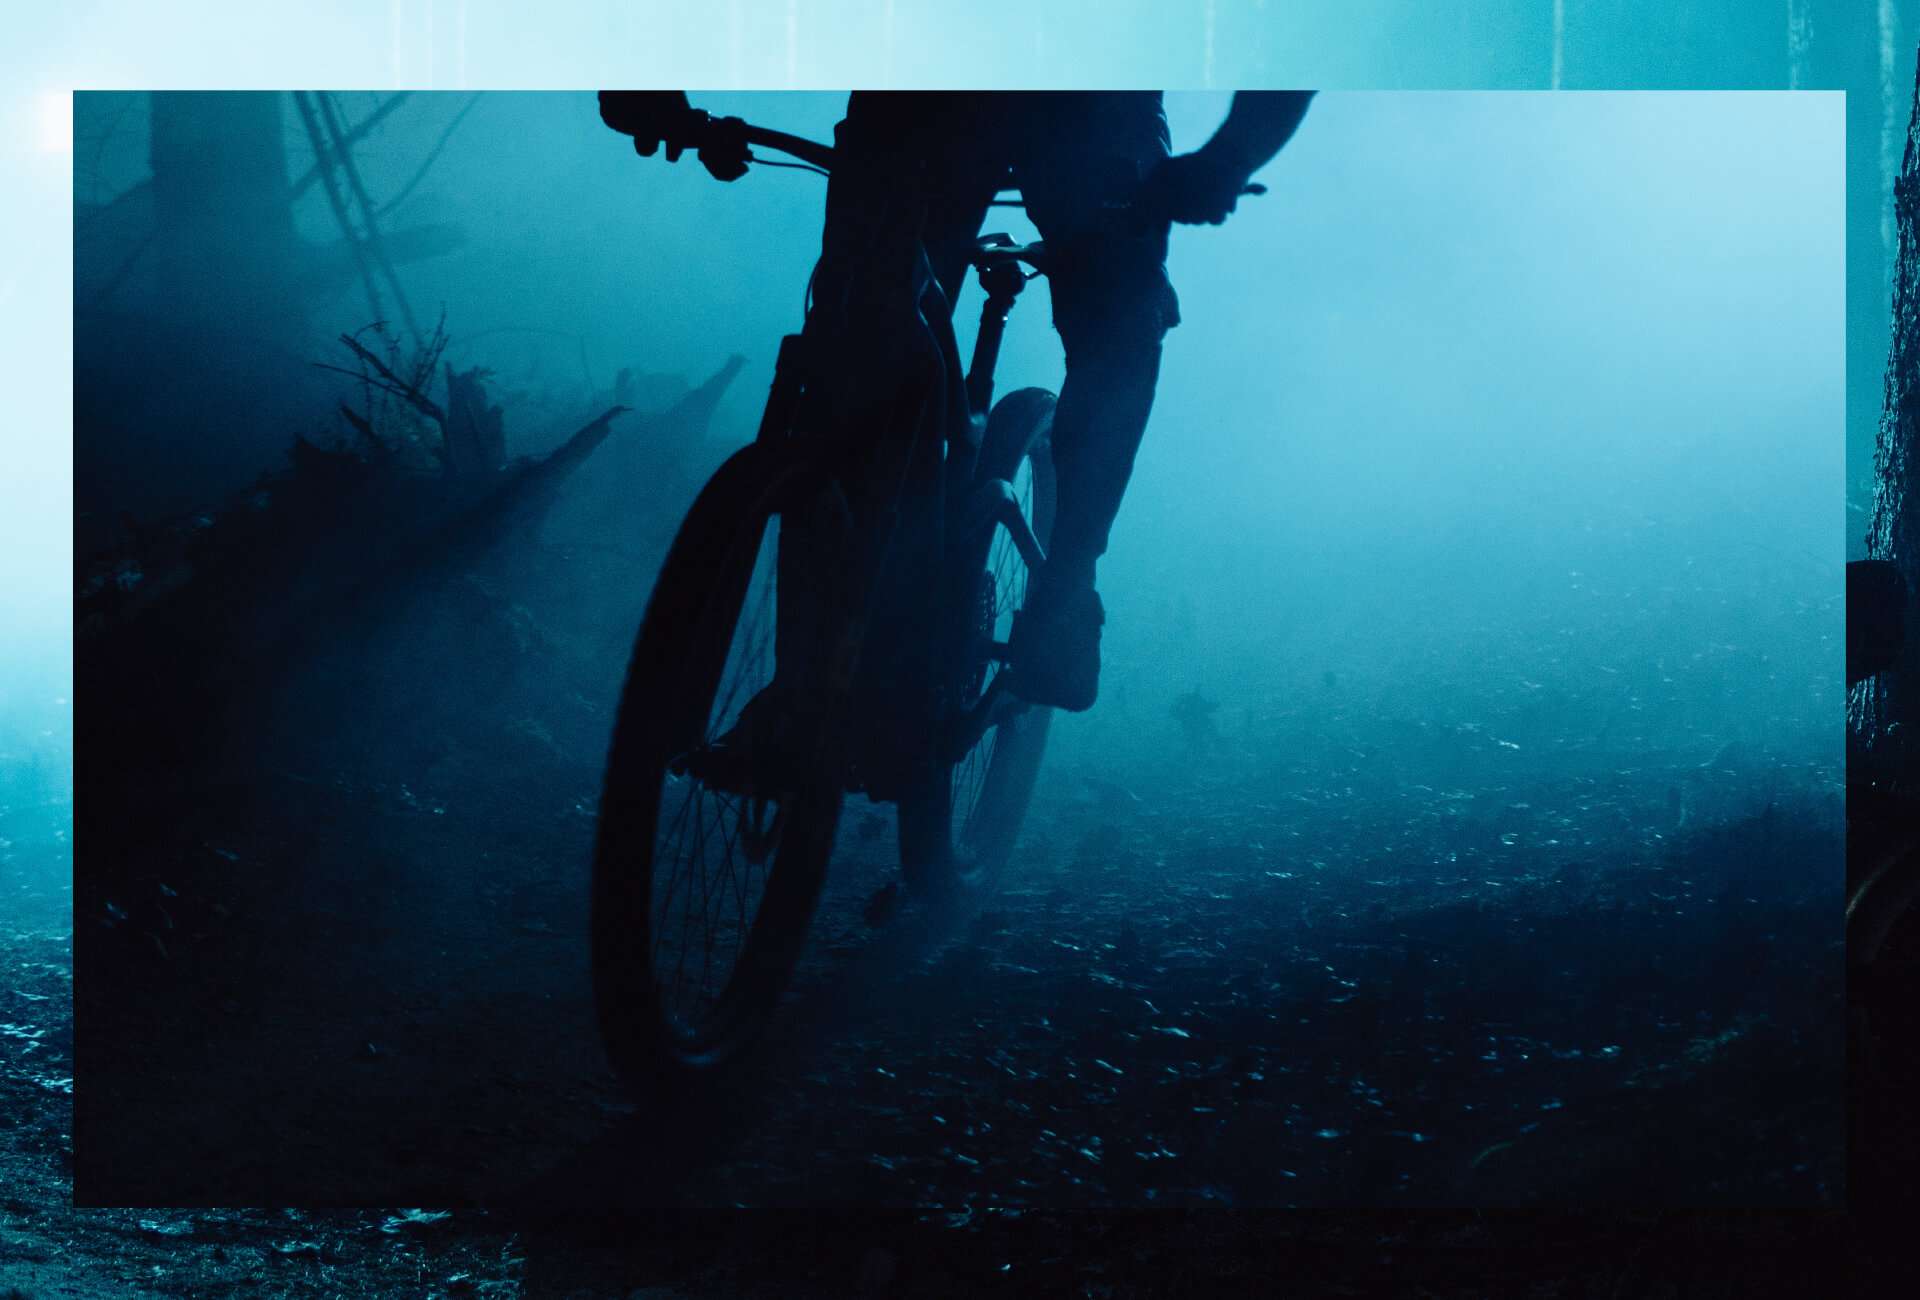 Ktoś jedzie na rowerze górskim przez ciemny las z niebieskimi światłami w tle